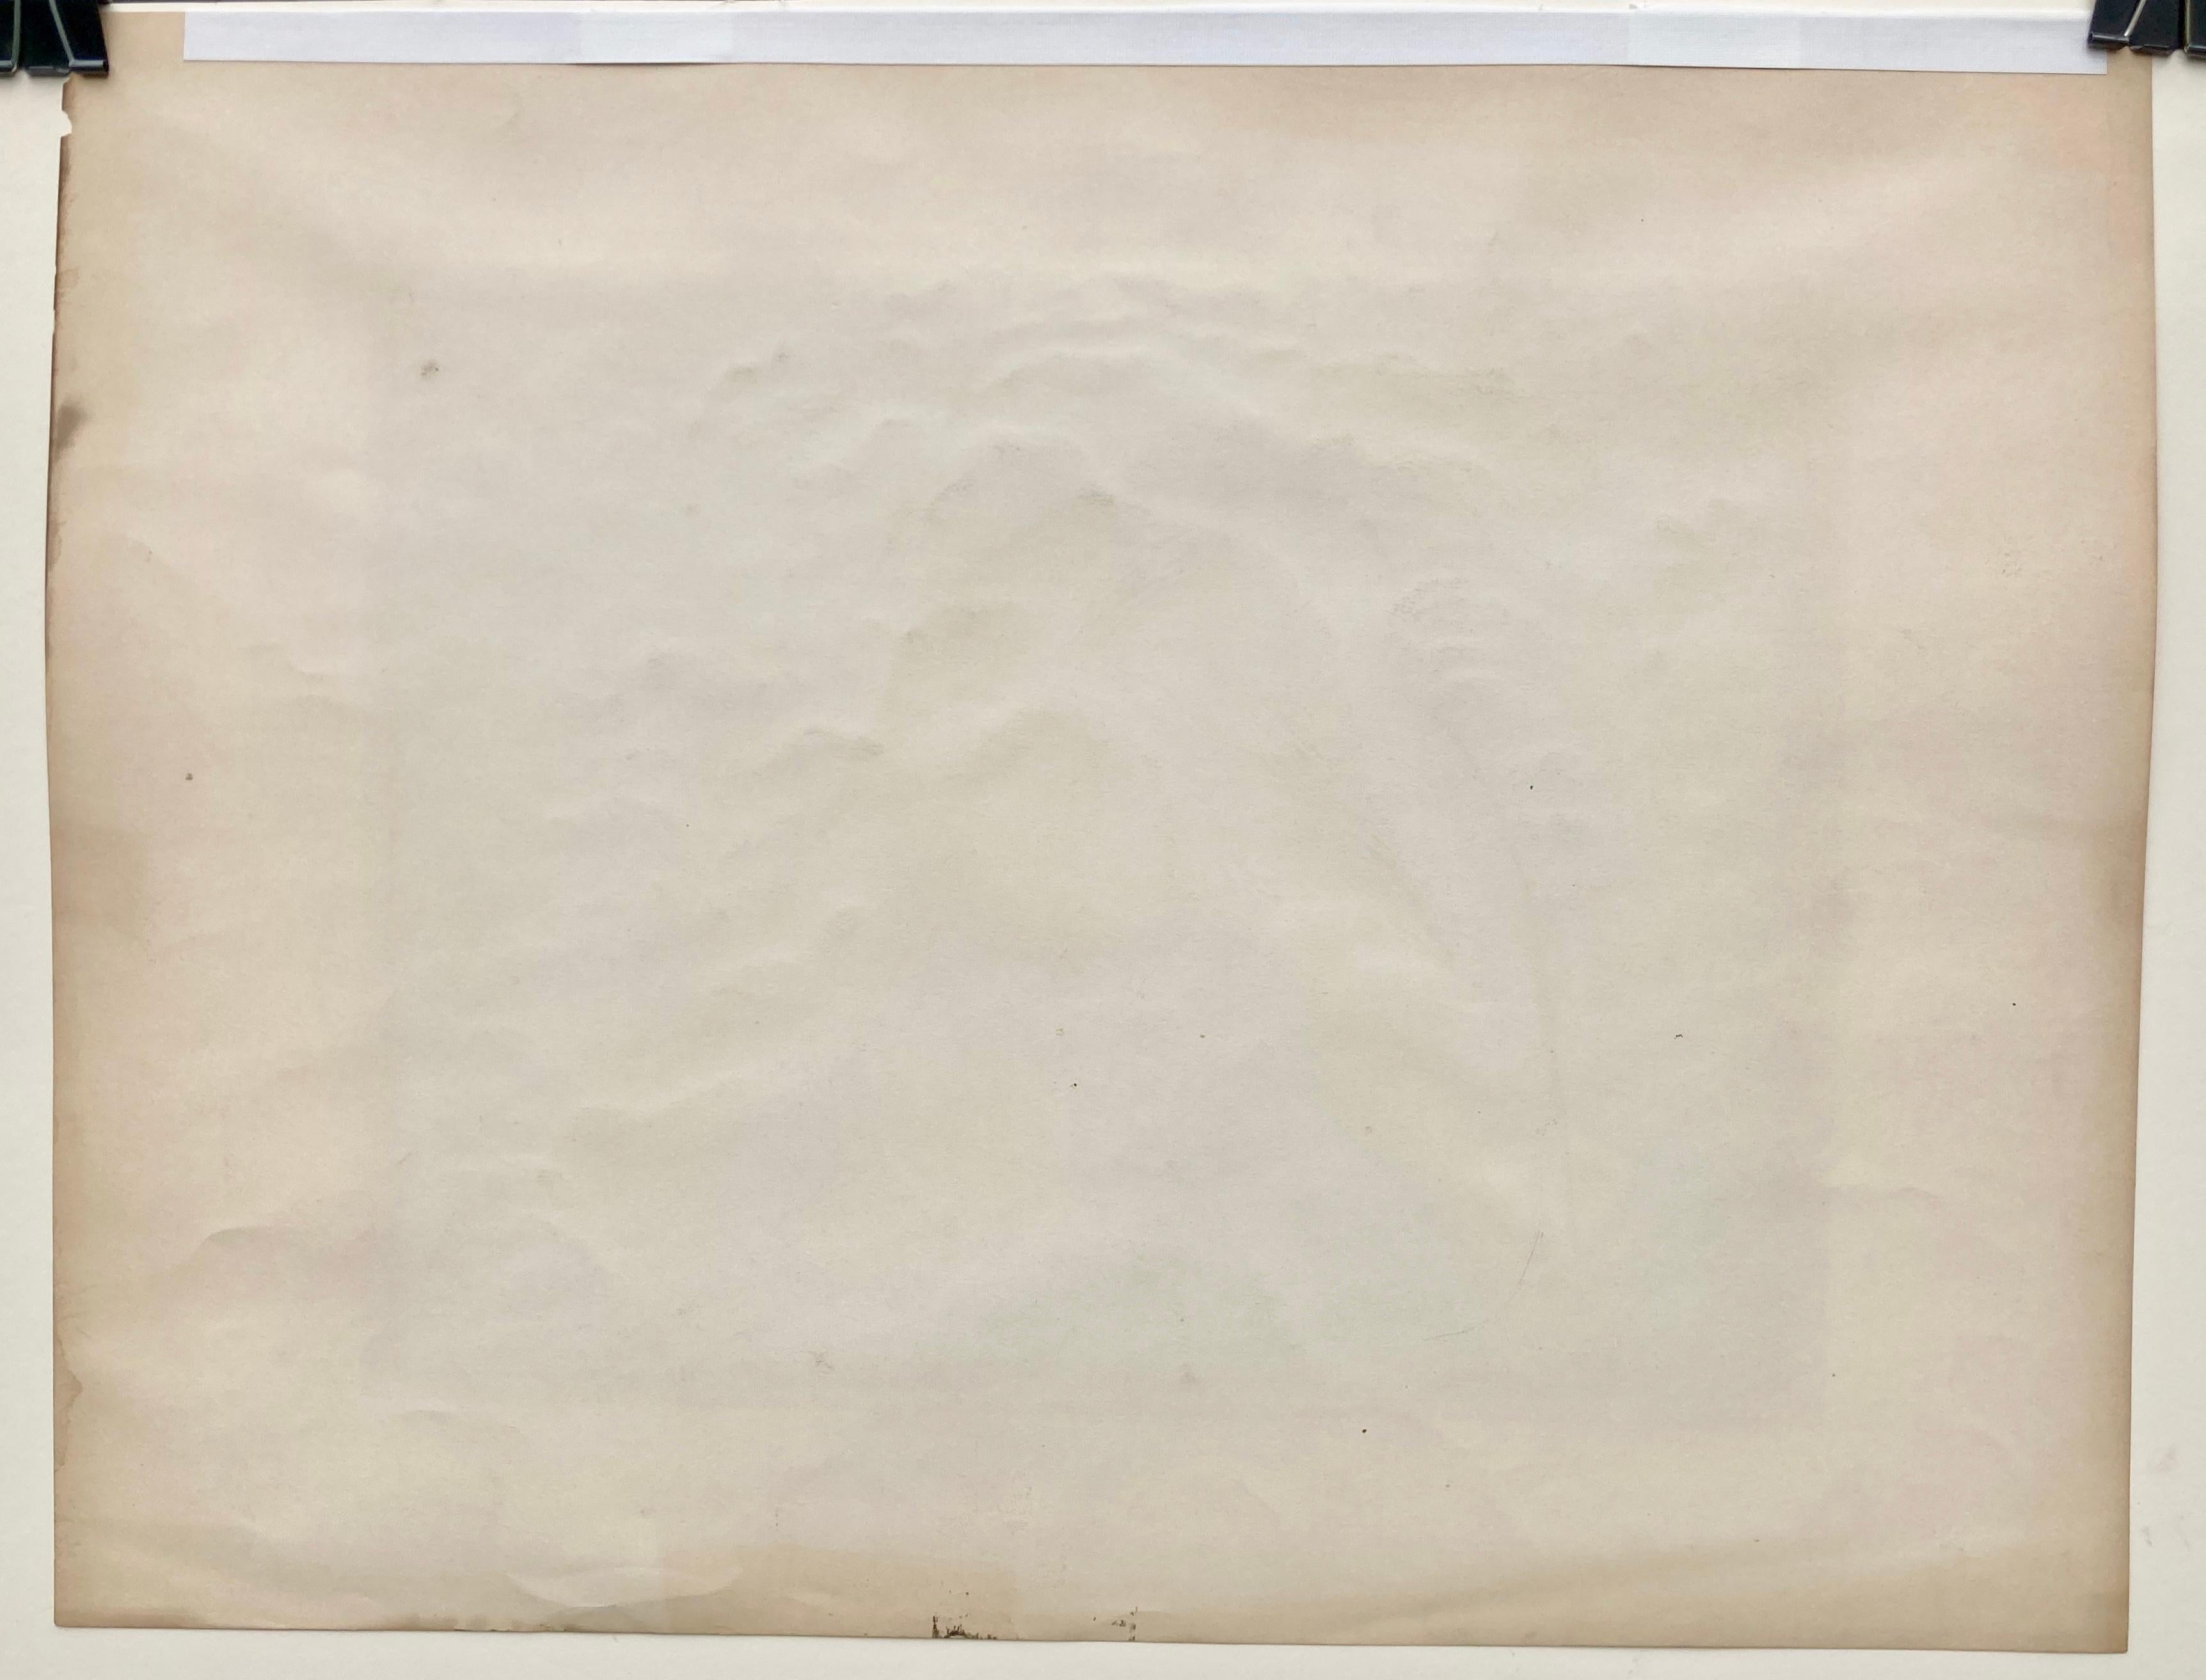 BERNARD (JOSEPH) STEFFEN (1907 - 1980)

ZIEHENDE KORNE (FODDER HOPPER) ca. 1935-45
Farbserigrafie, signiert mit einer vollständigen Signatur unterhalb des Bildes am unteren rechten Blattrand. Unbekannte Ausgabe, aber sehr selten. 11 x 13 7/8 Zoll,